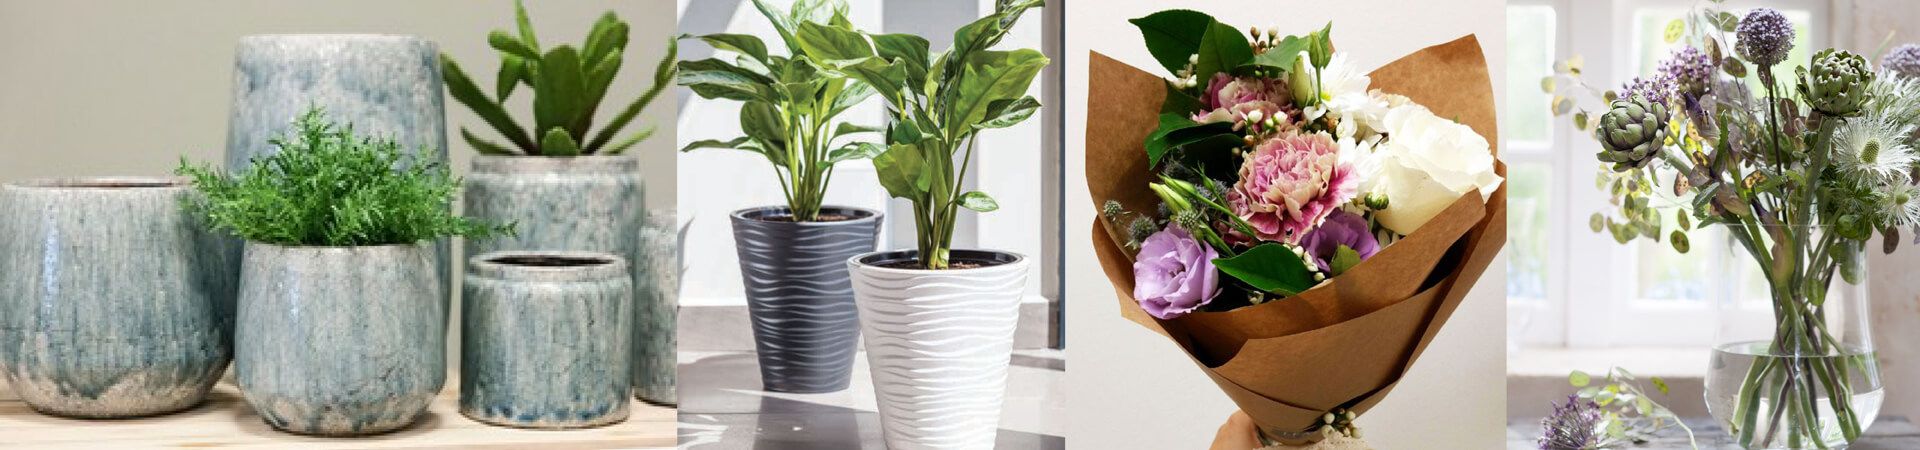 Florist & Garden Center Supplies